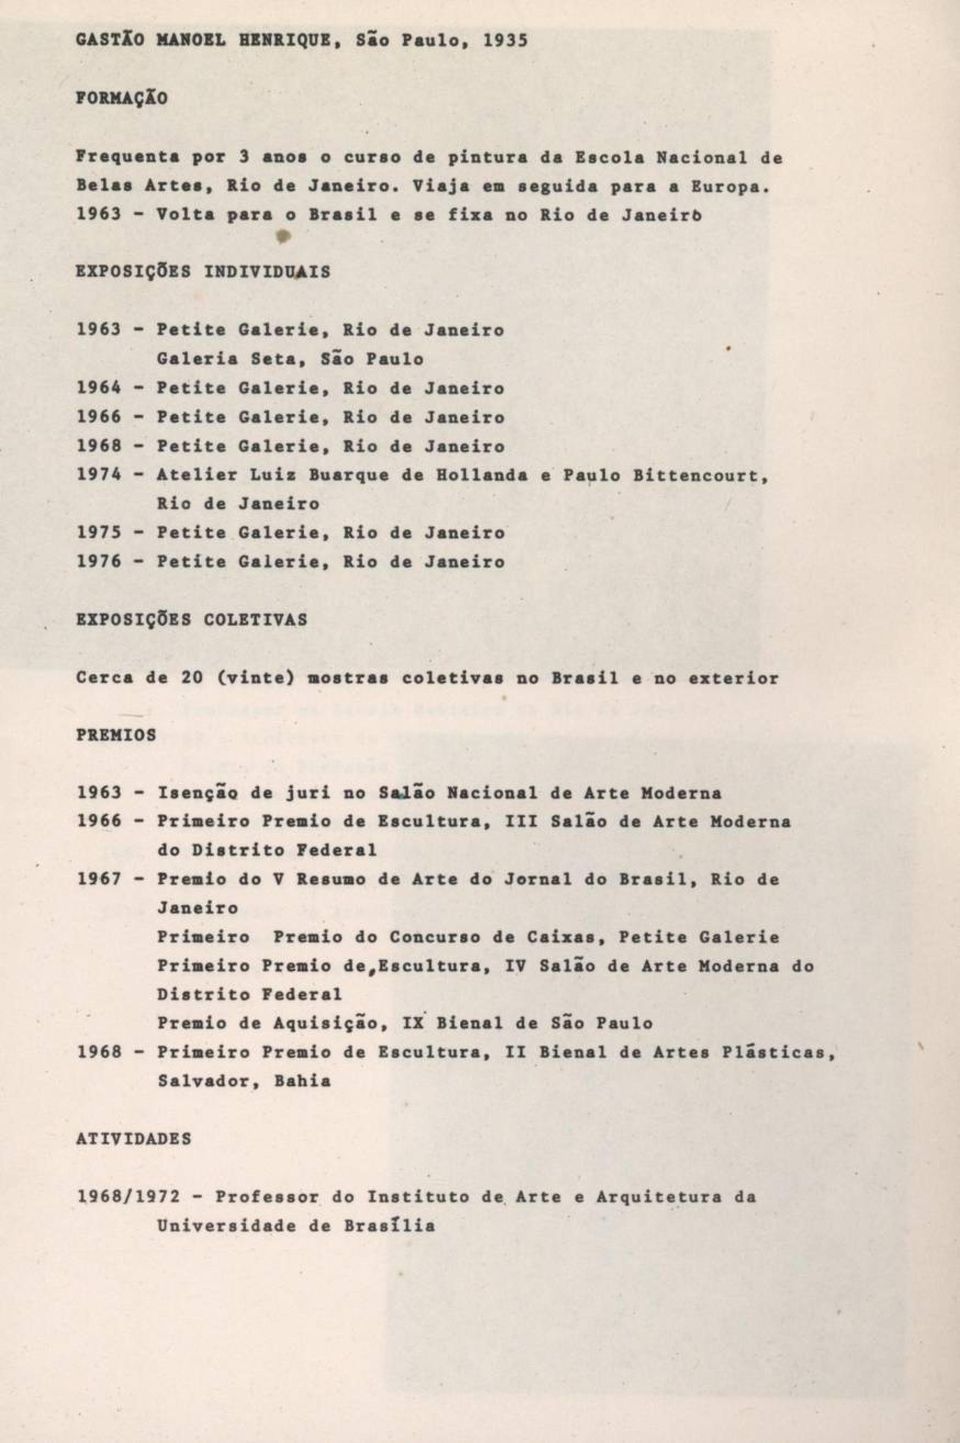 Galerie, Rio de Janeiro 1968 - Petite Galerie, Rio de Janeiro 1974 - Atelier Luiz Buarque de Hollande e Paulo Bittencourt, Rio de Janeiro 1975 - Petite Galerie, Rio de Janeiro 1976 - Petite Galerie,